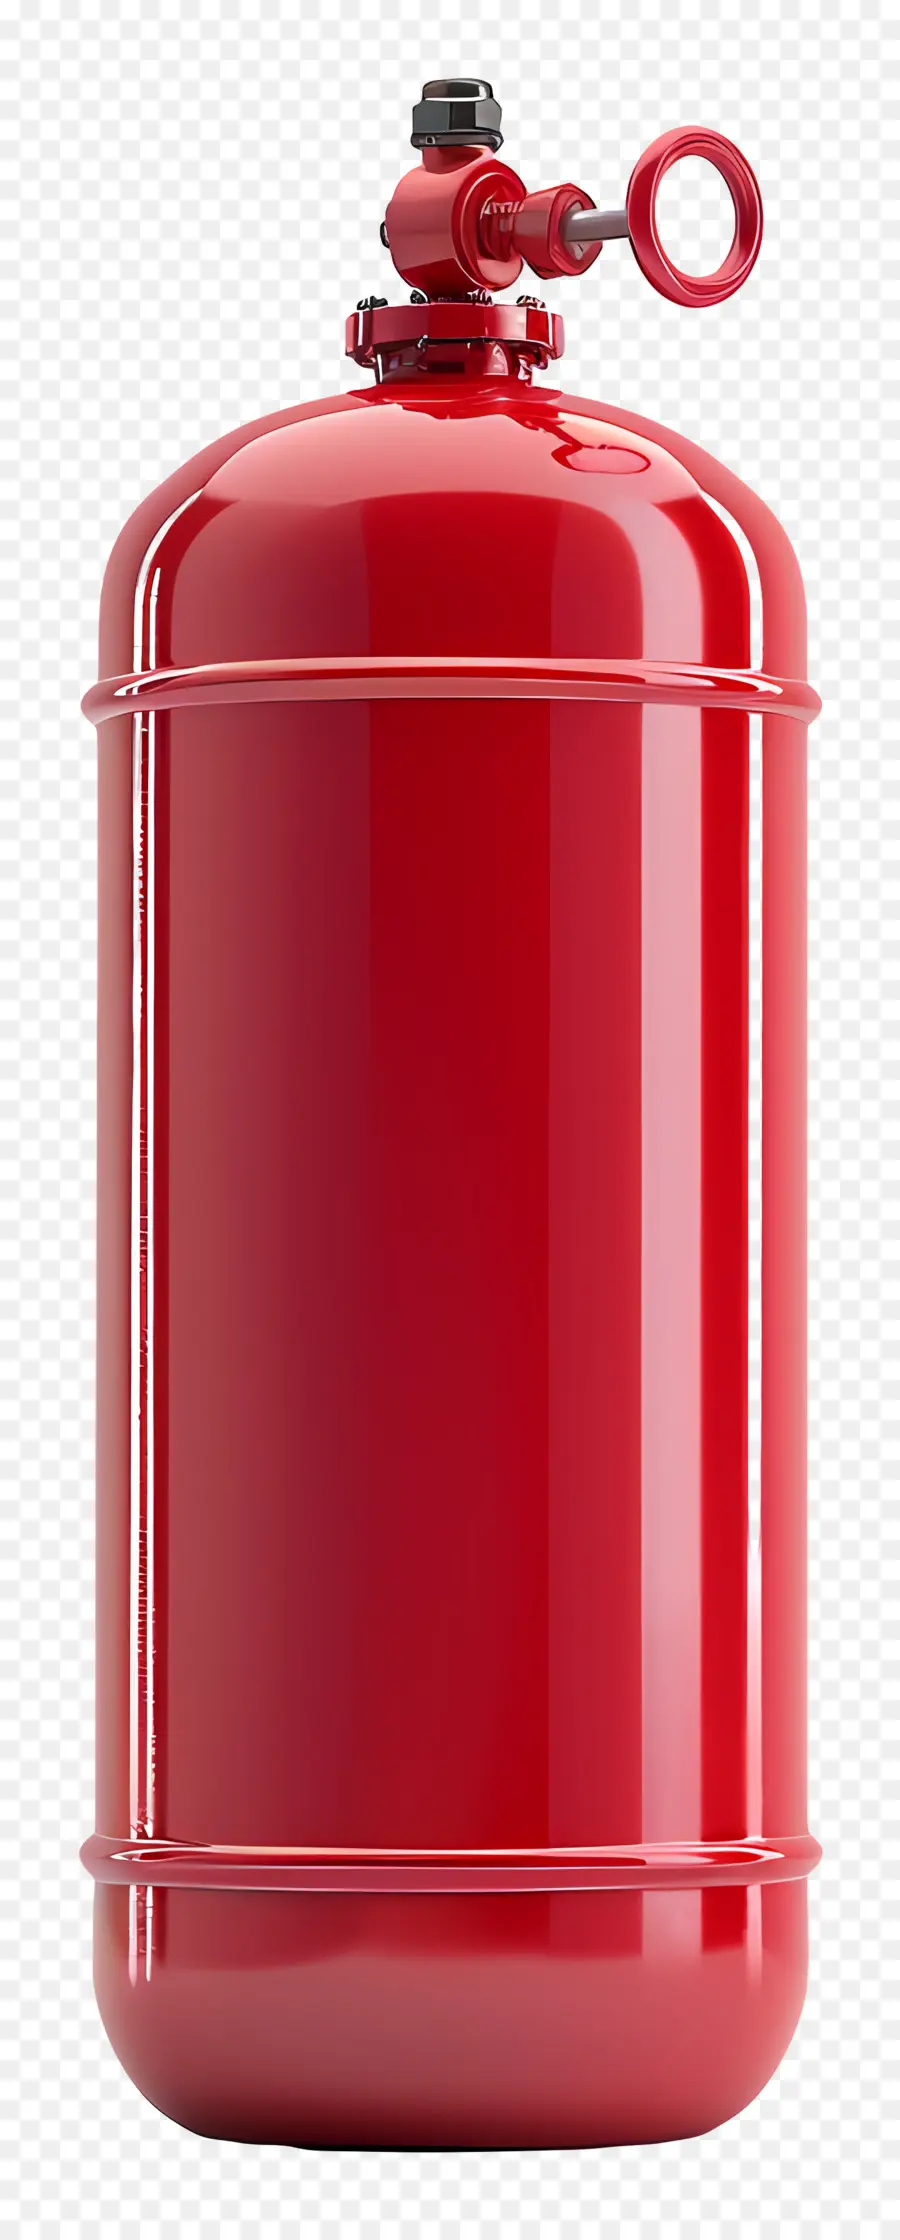 Gaszylinder rotes Metalltrommel Schwarzer Schloss Kabelspeicherbehälter - Rote Metalltrommel mit schwarzem Schloss, Kabel